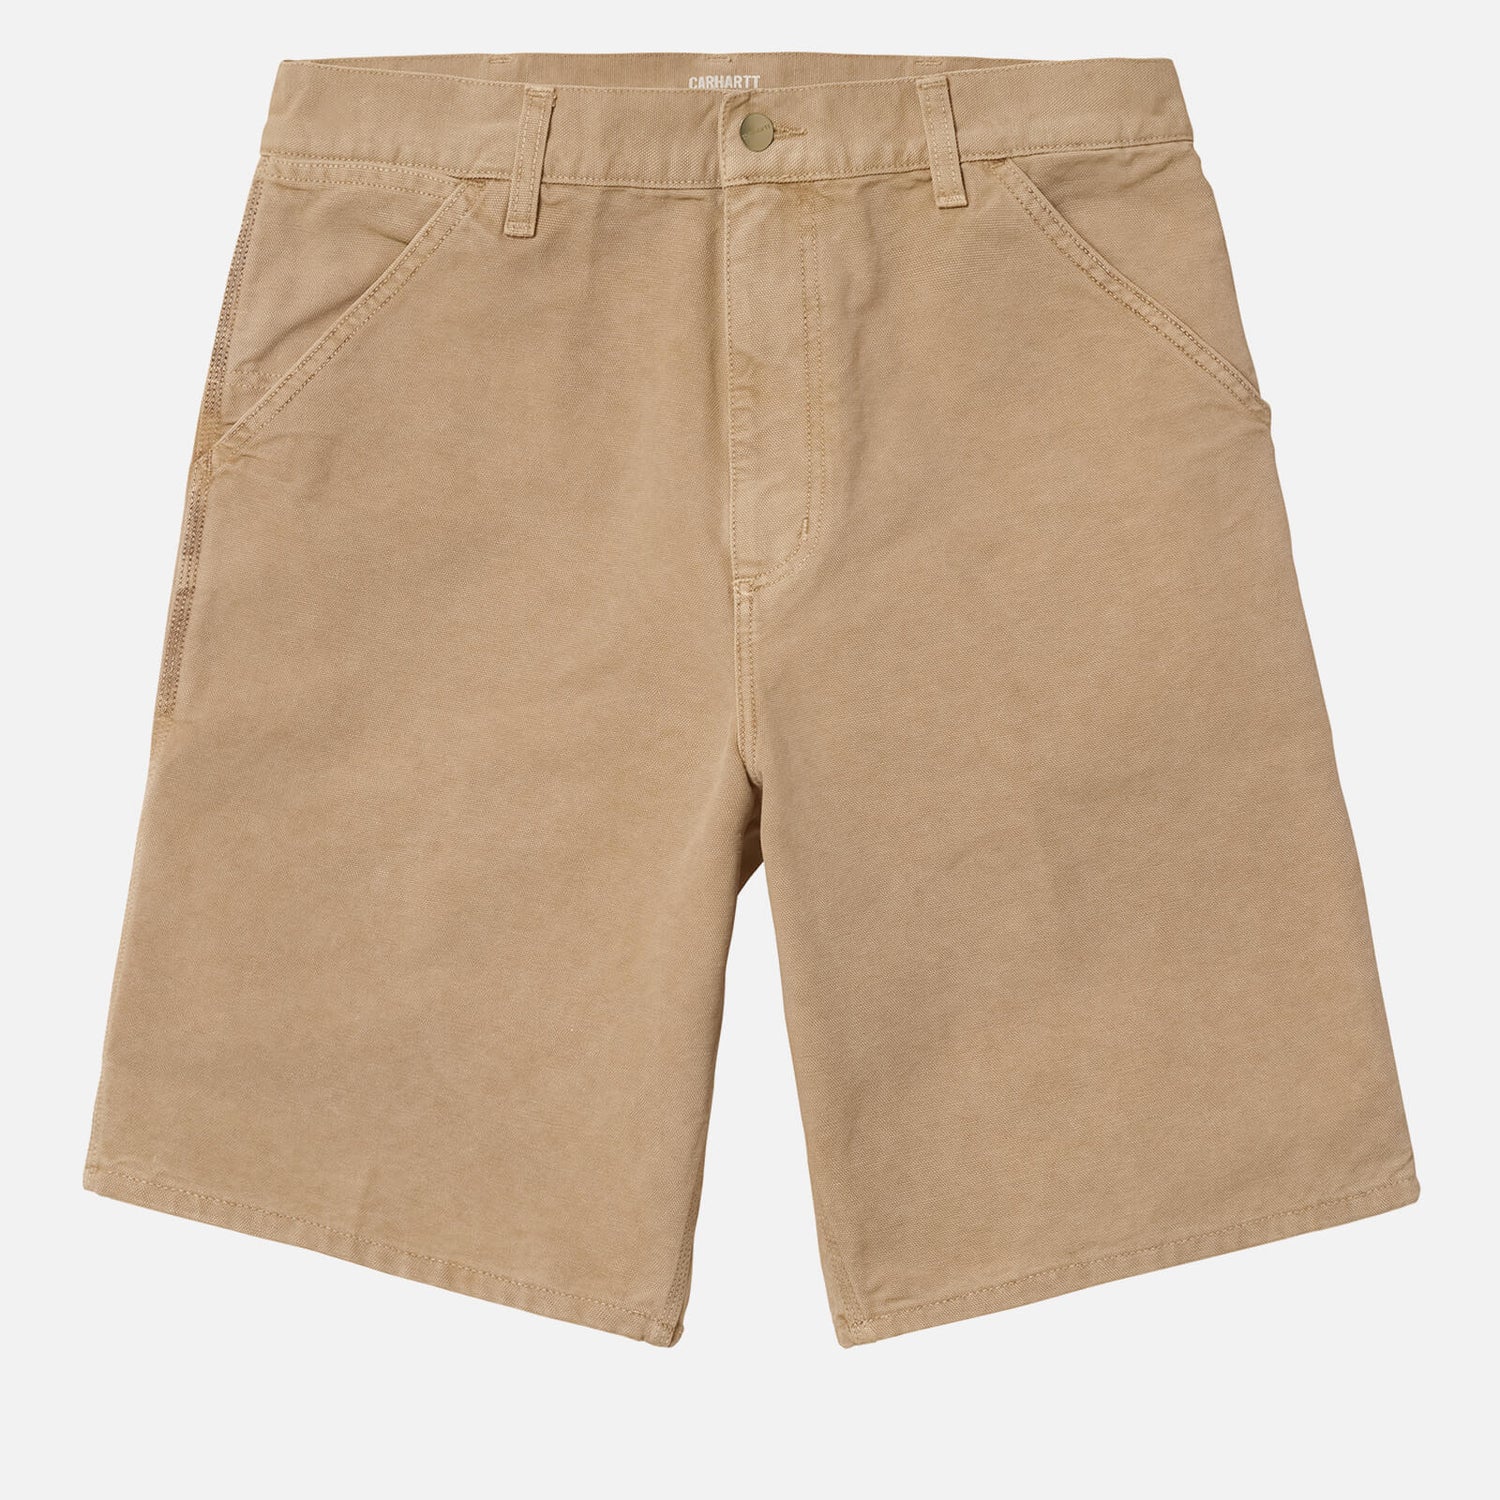 Carhartt WIP Men's Single Knee Shorts - Dusty H Brown - W30